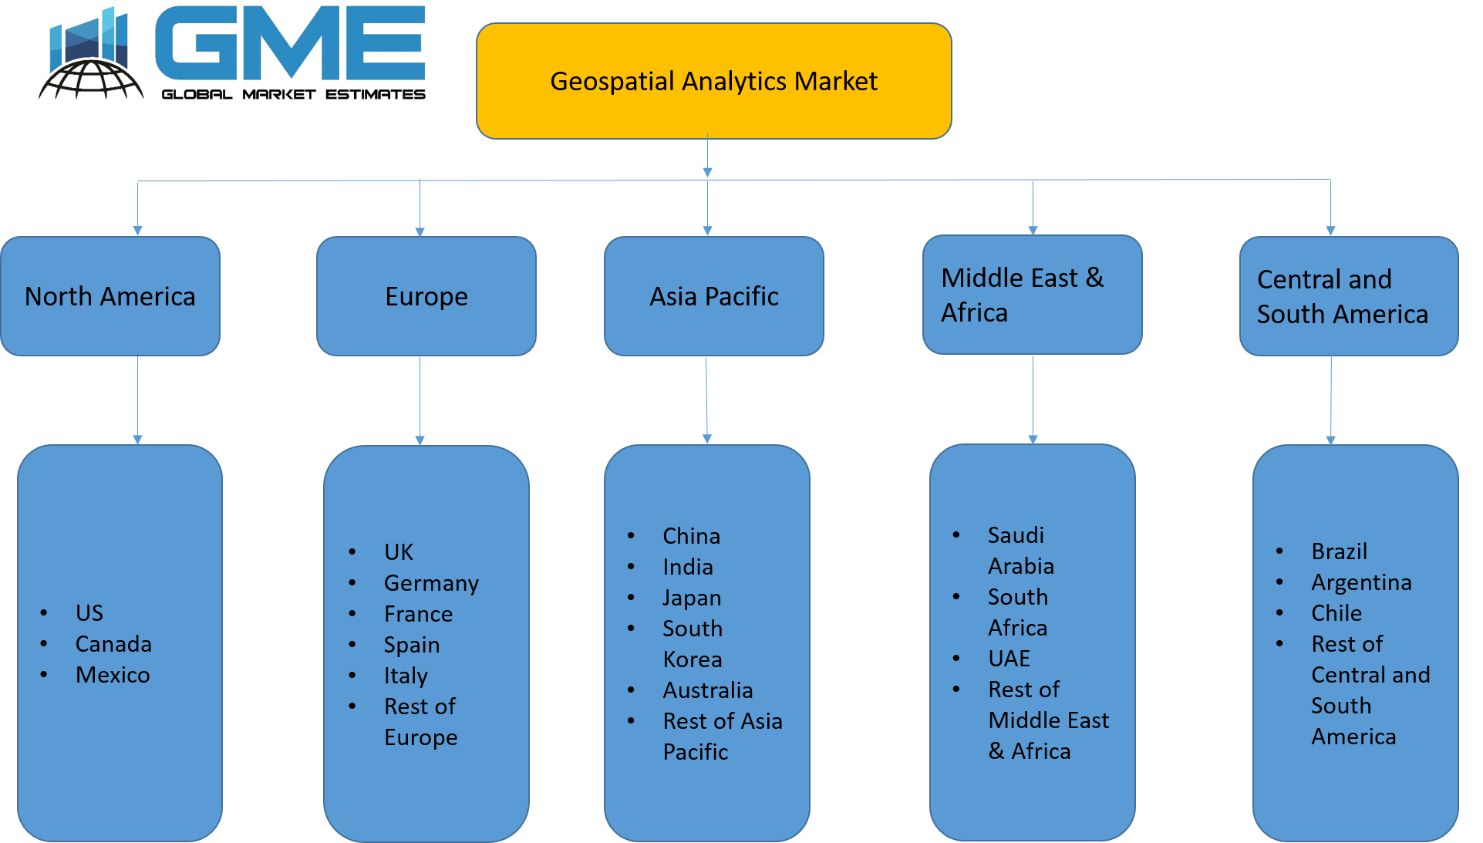 Geospatial Analytics Market - Regional Analysis